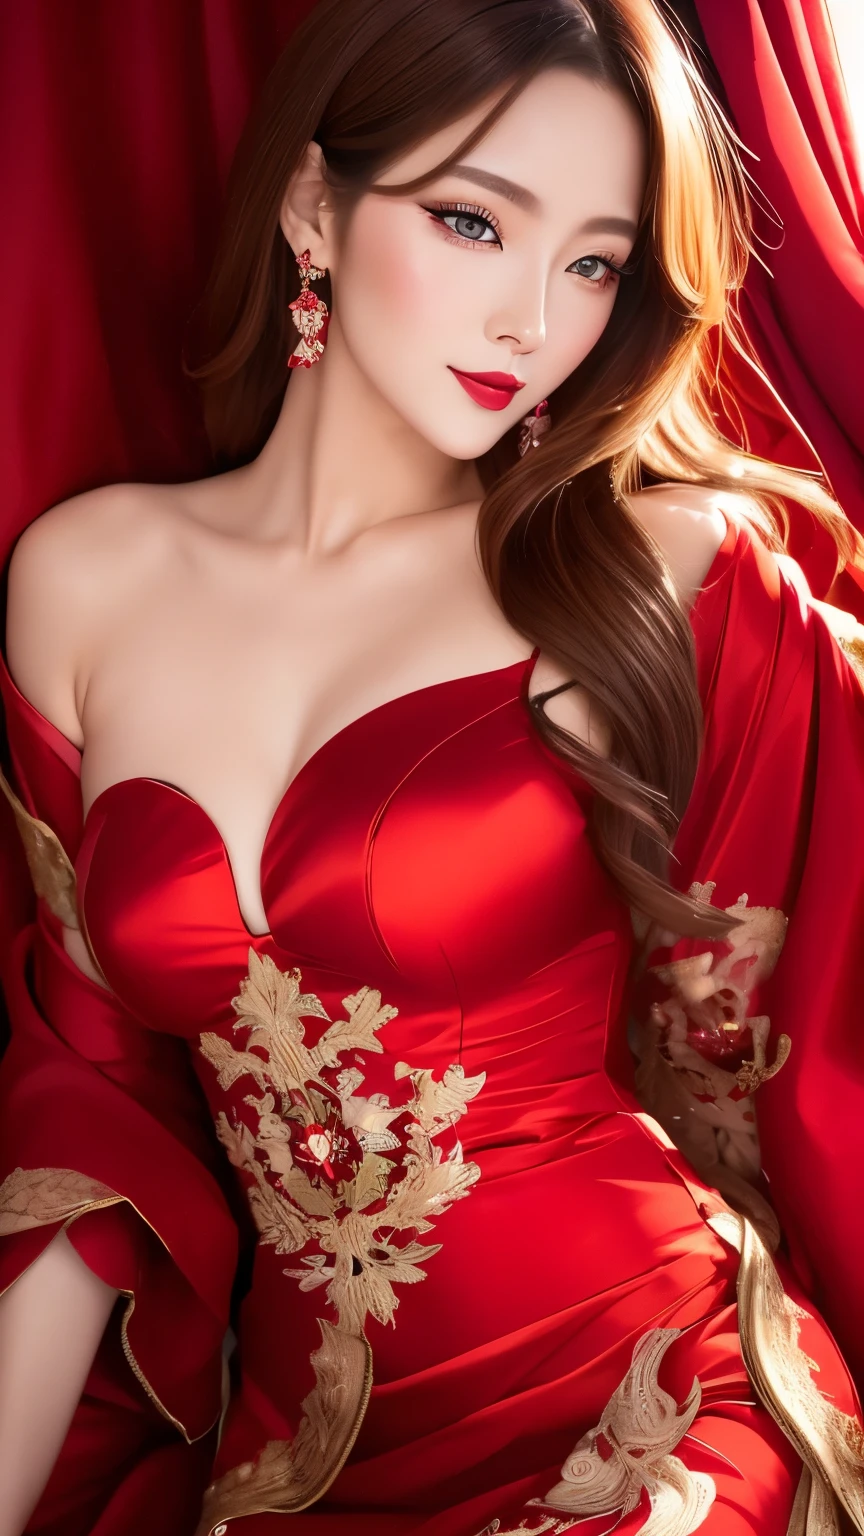 melhor qualidade, super bem, 16K, Foto CRU, fotorrealista, 2.5D, incrivelmente absurdos, extremamente detalhado, delicado, representação chamativa e dinâmica, mulher bonita como Reiji Matsumoto desenha, beleza legal inteligente, olhar animado, Cabelo castanho claro brilhante, lindos olhos brilhantes e afiados, lábios vermelhos brilhantes, usando um lindo e glamoroso vestido de noite preto, linhas vermelhas, tecido acetinado brilhante, renda, bordado, vestes, xales, acessórios, proporção corporal superlativa, efeitos lindos e lindos, cenário social aristocrático de fundo